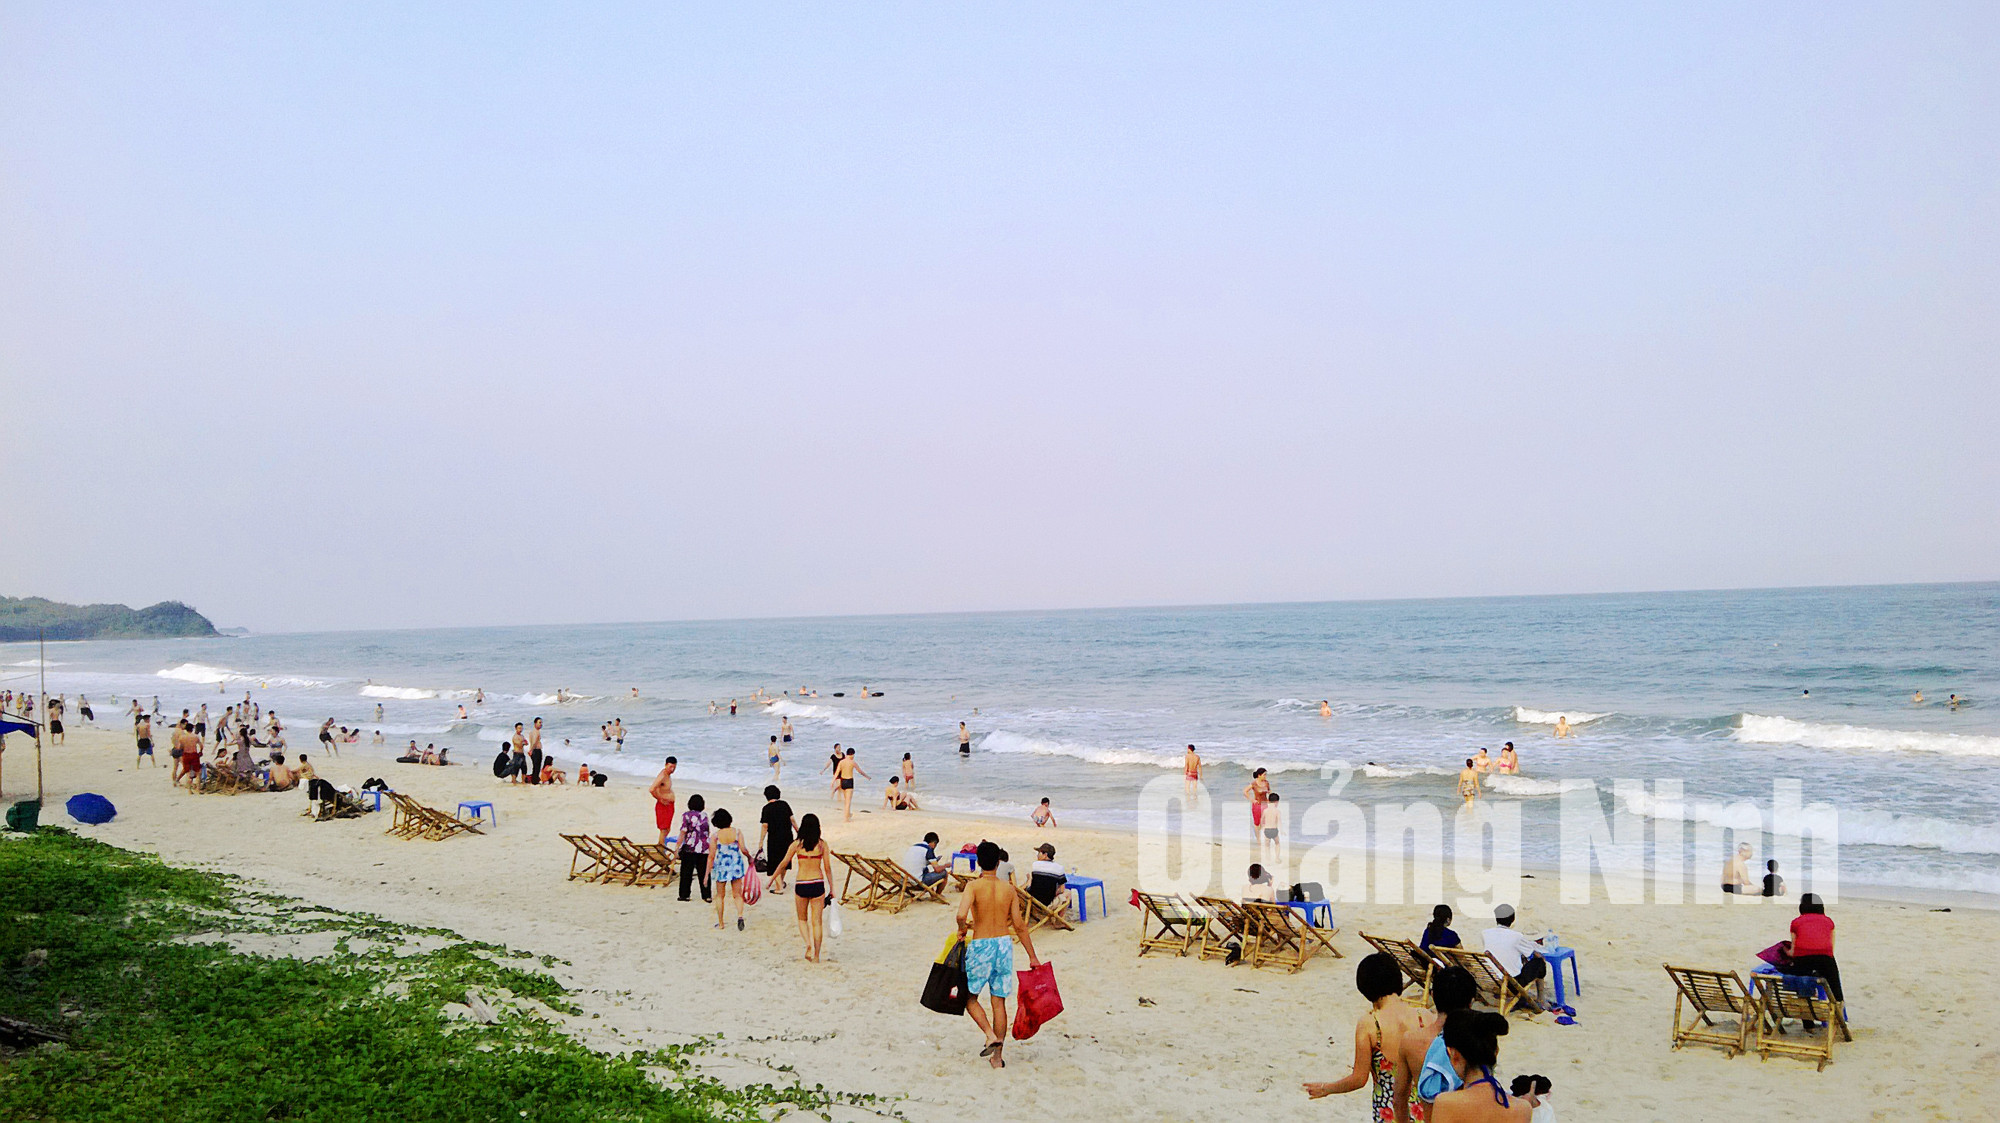 Bãi biển Quan Lạn vừa được Hiệp hội Du lịch Việt Nam vinh danh là bãi biển đẹp nhất Việt Nam. Ảnh: Thu Nguyên